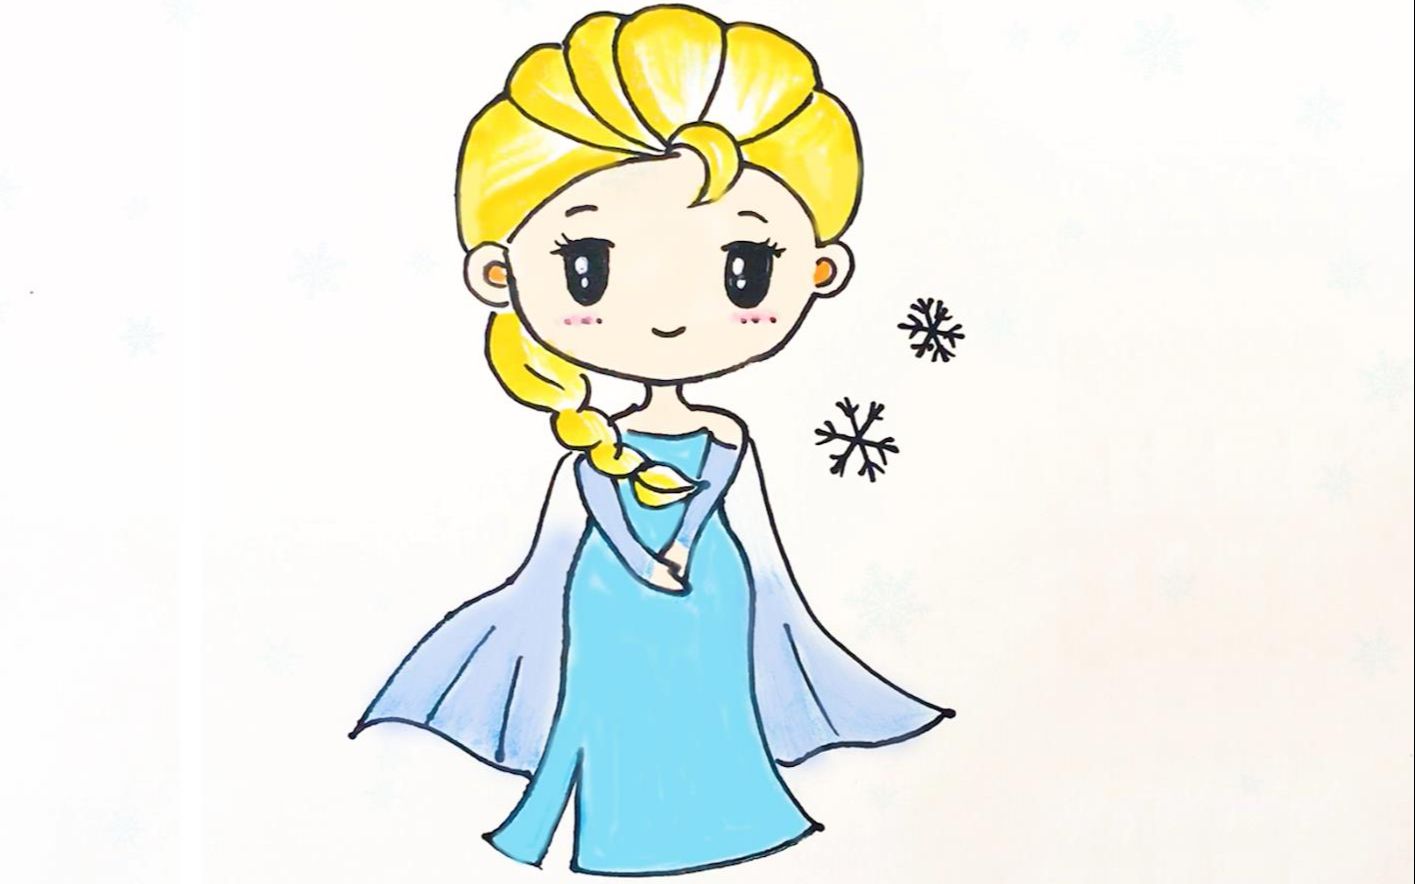 儿童简笔画教程|我心中的艾莎小公主,她最美丽!你觉得呢?